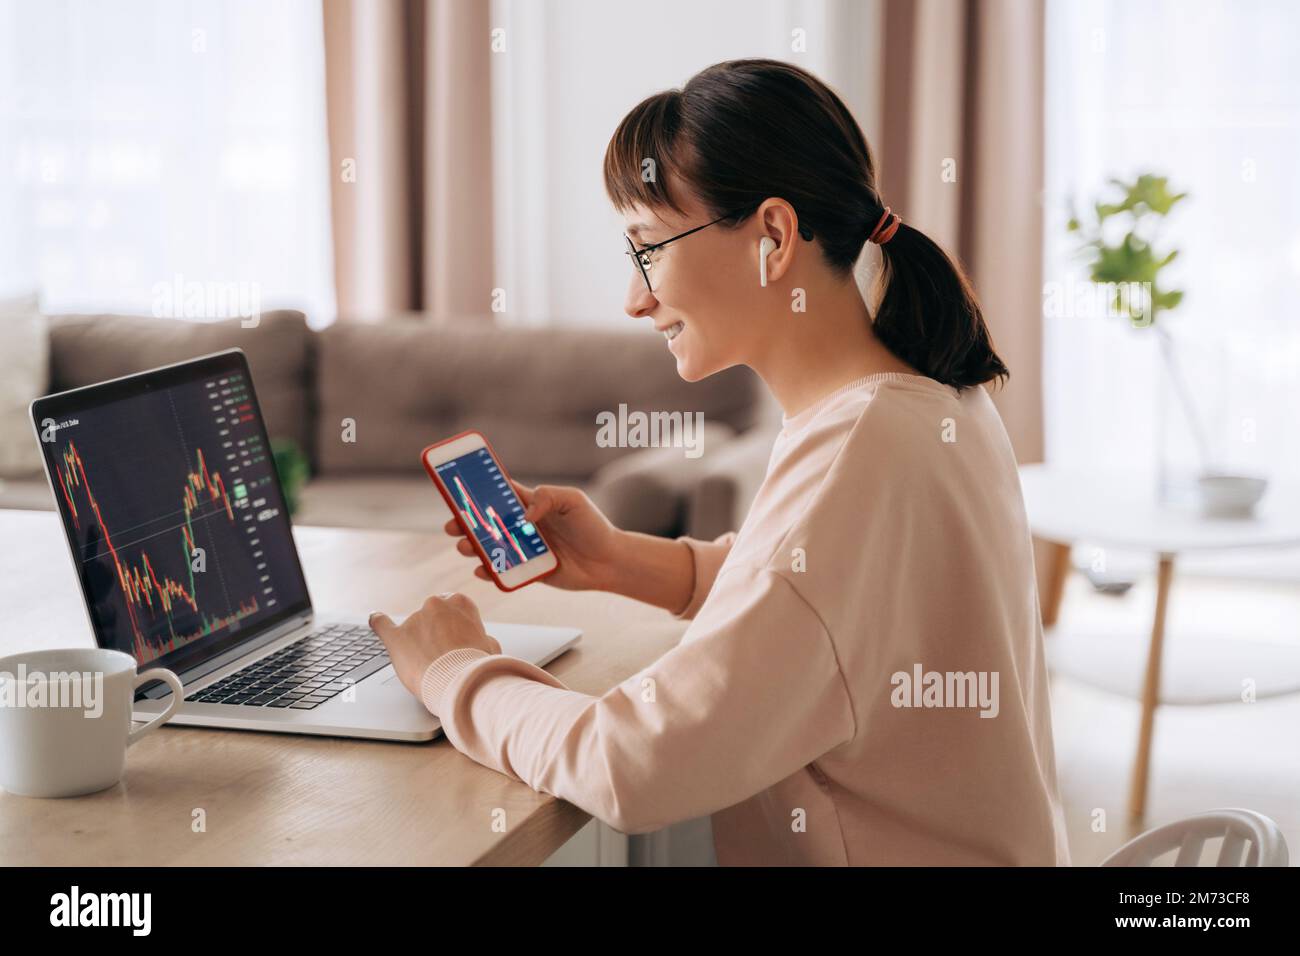 Femme d'affaires souriante négociant analyste regardant l'écran d'ordinateur portable, tenant le smartphone, portant des écouteurs. Investisseur courtier analysant des indices, négociant des données d'investissement en ligne sur le graphique de marché boursier à la maison Banque D'Images